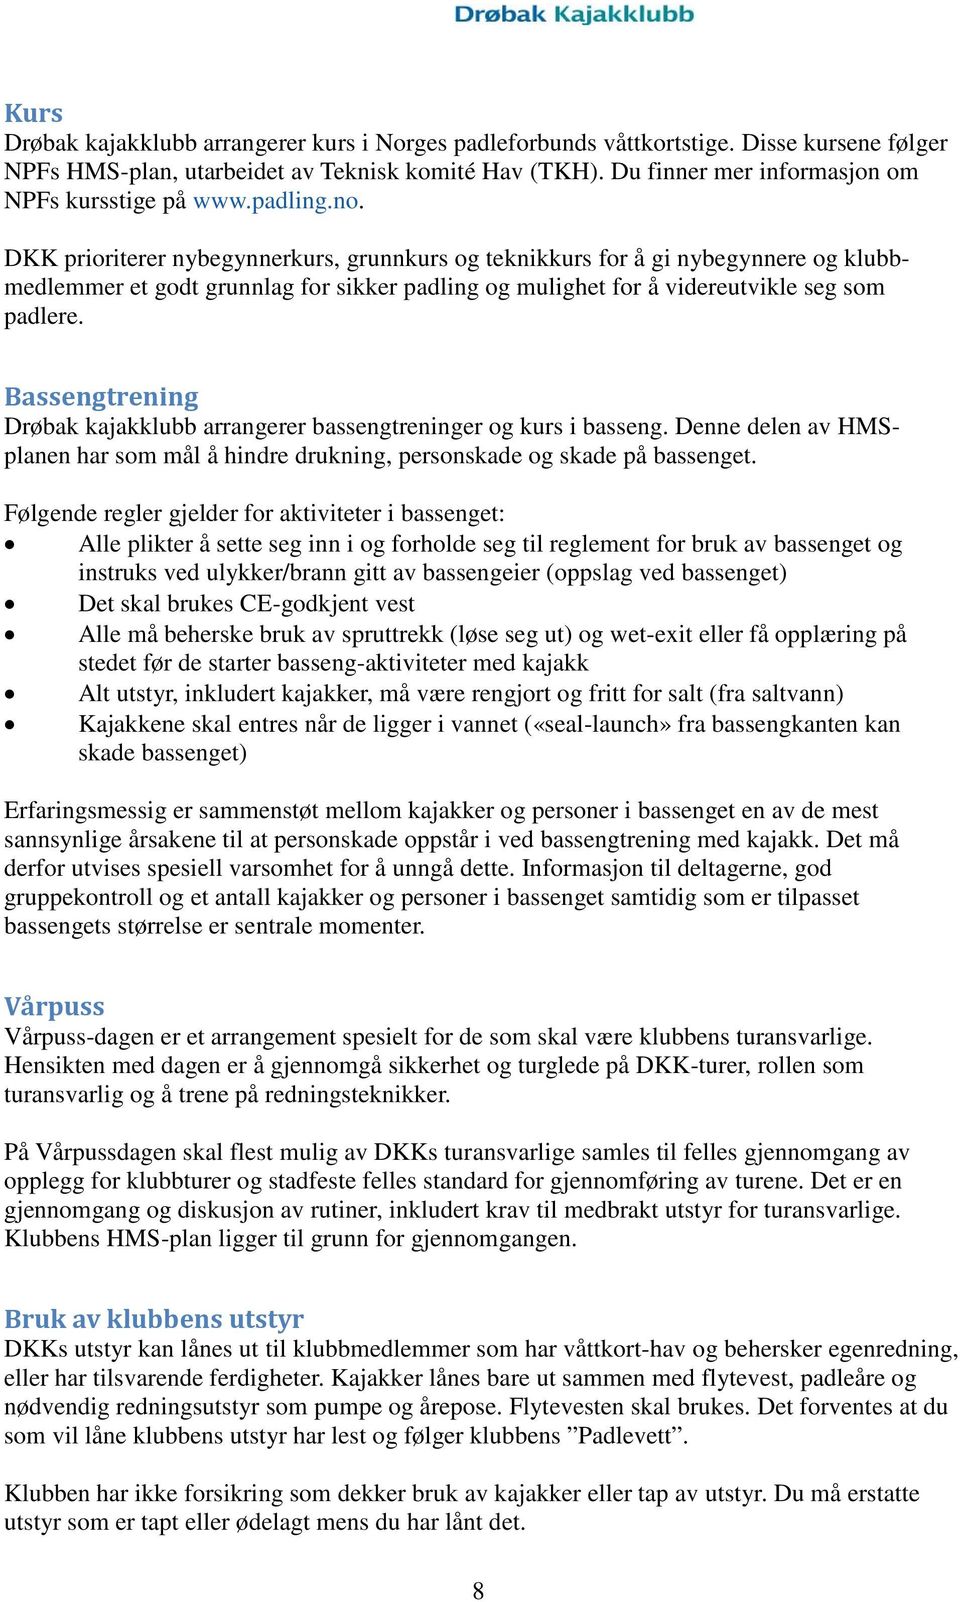 Helse Miljø Sikkerhet. HMS-plan for Drøbak Kajakklubb - PDF Gratis  nedlasting